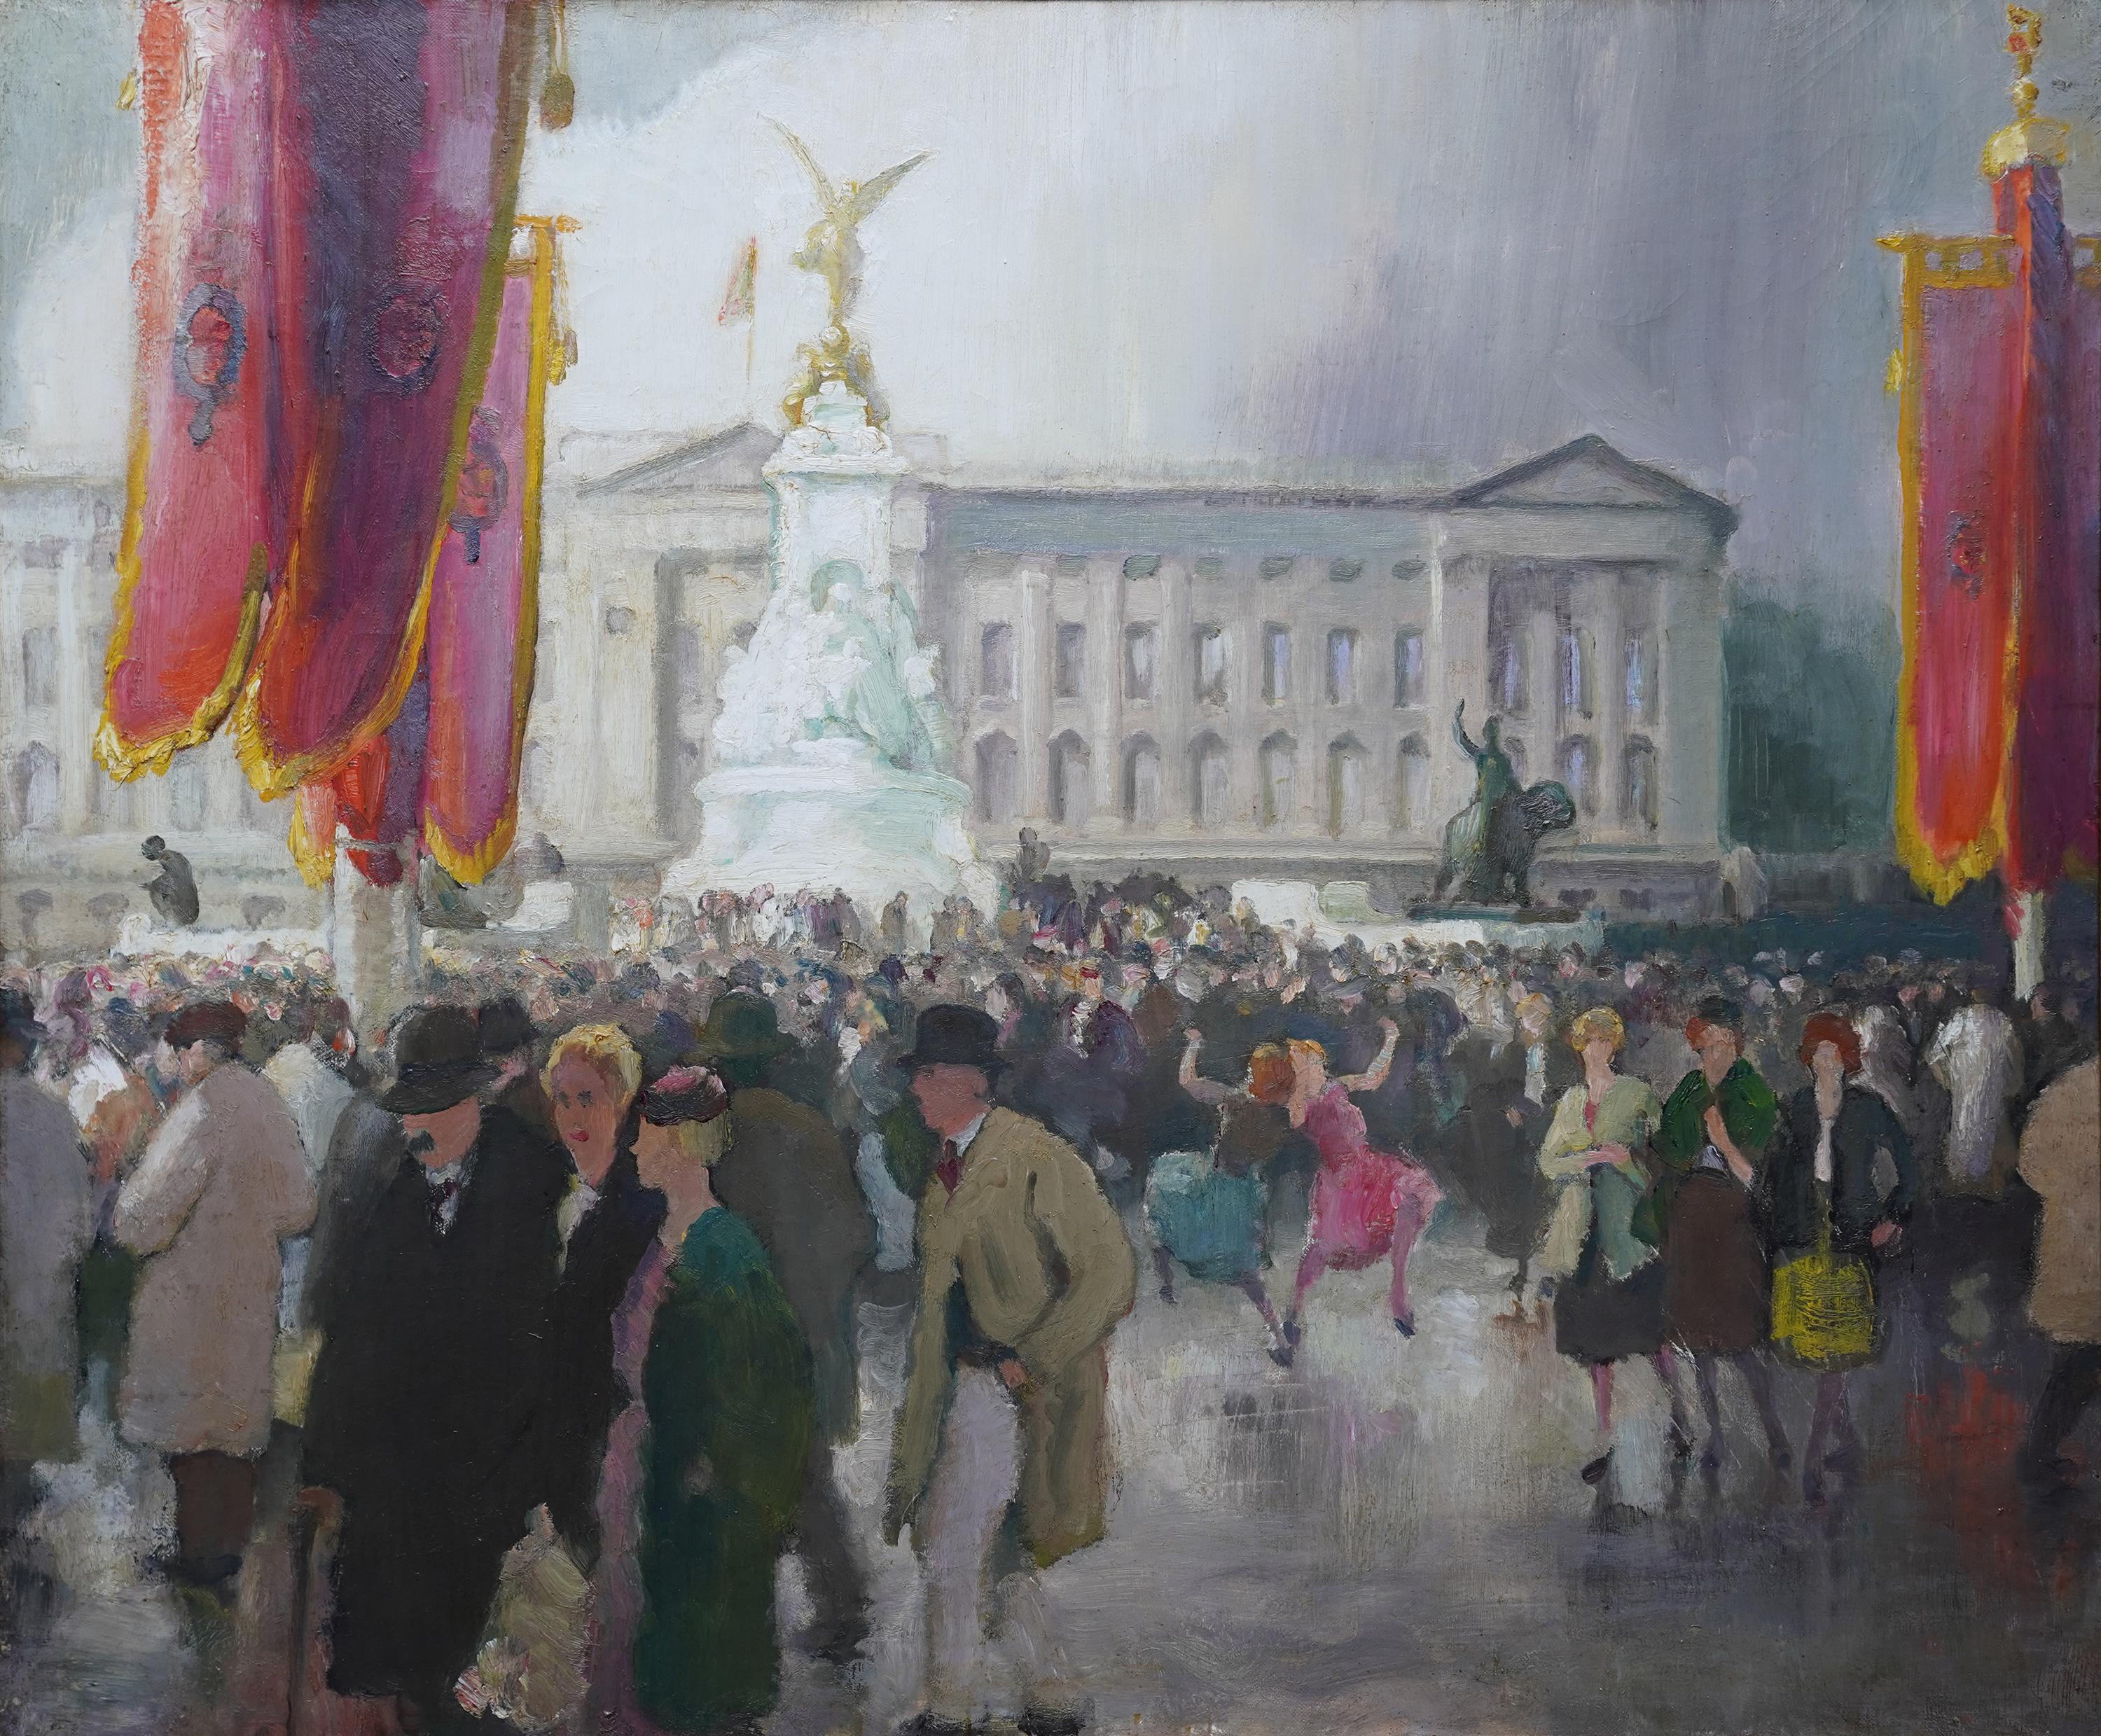 Festivities Buckingham Palace – britisches figuratives Landschaftsgemälde aus den 1950er Jahren – Painting von Spencer Pryse